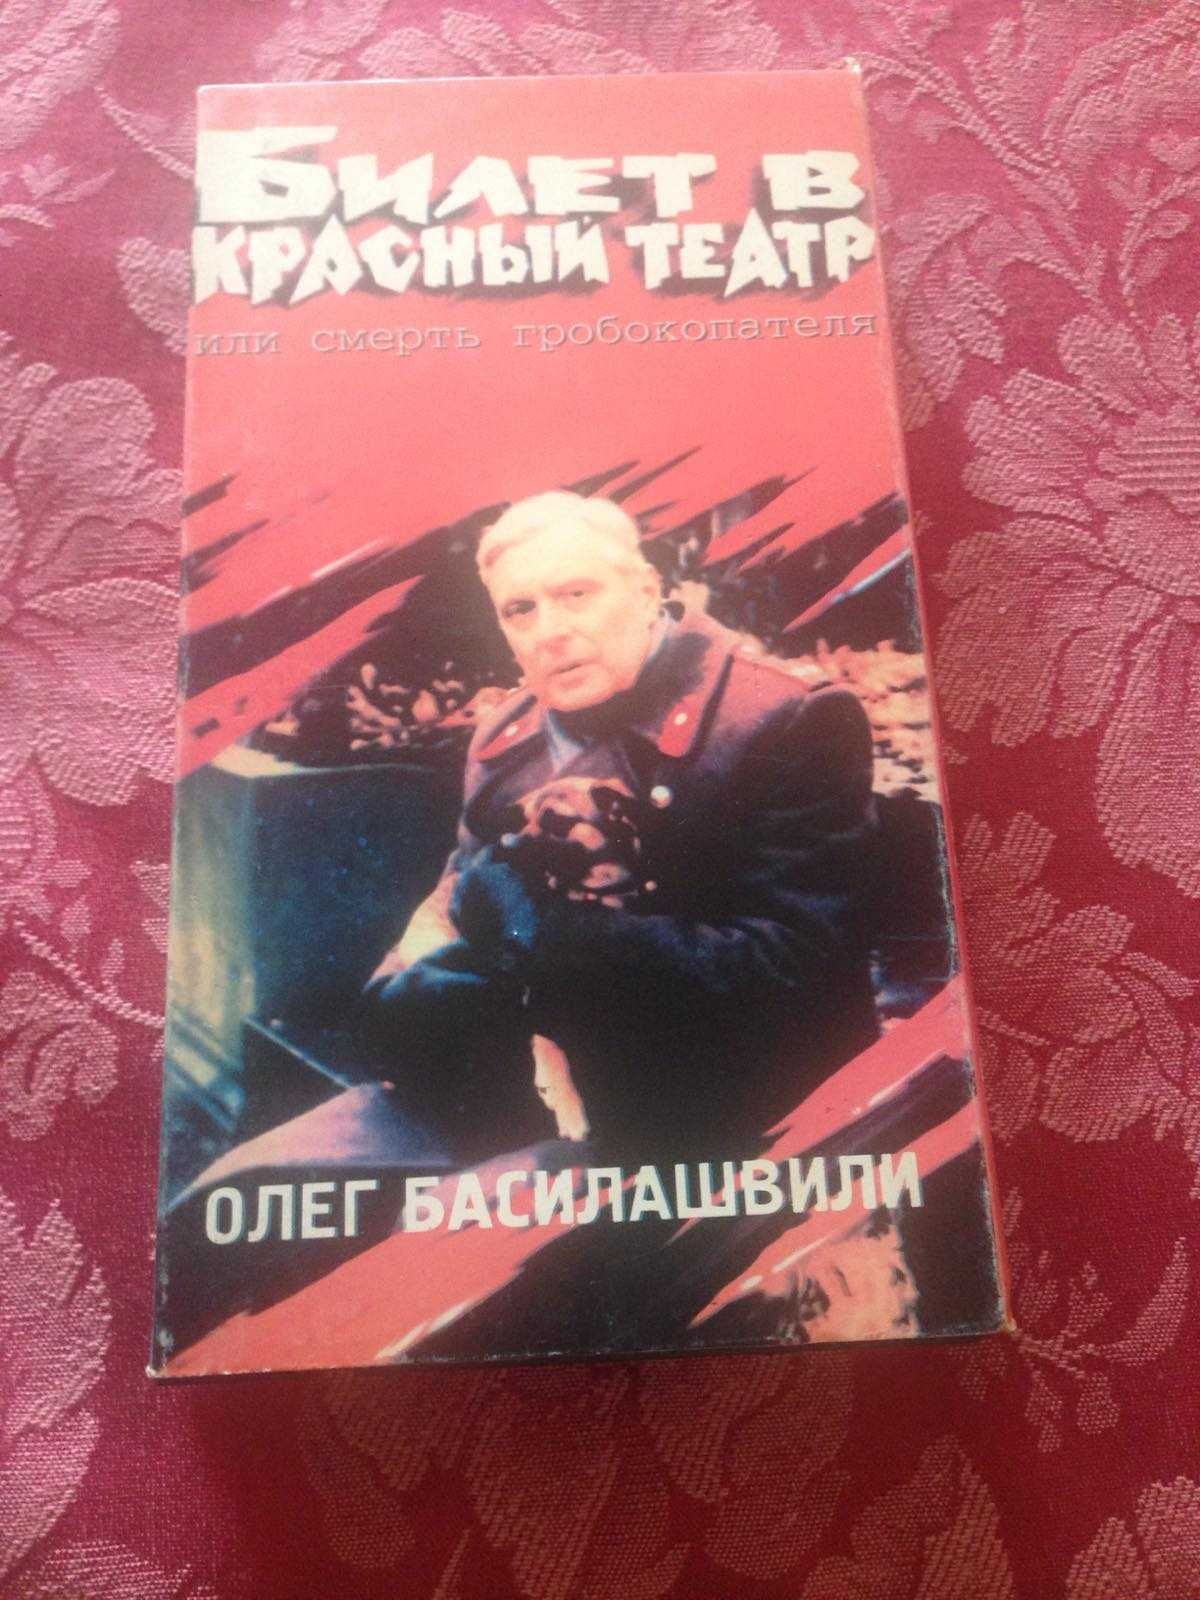 Продам видеокассеты Михаила Задорнова